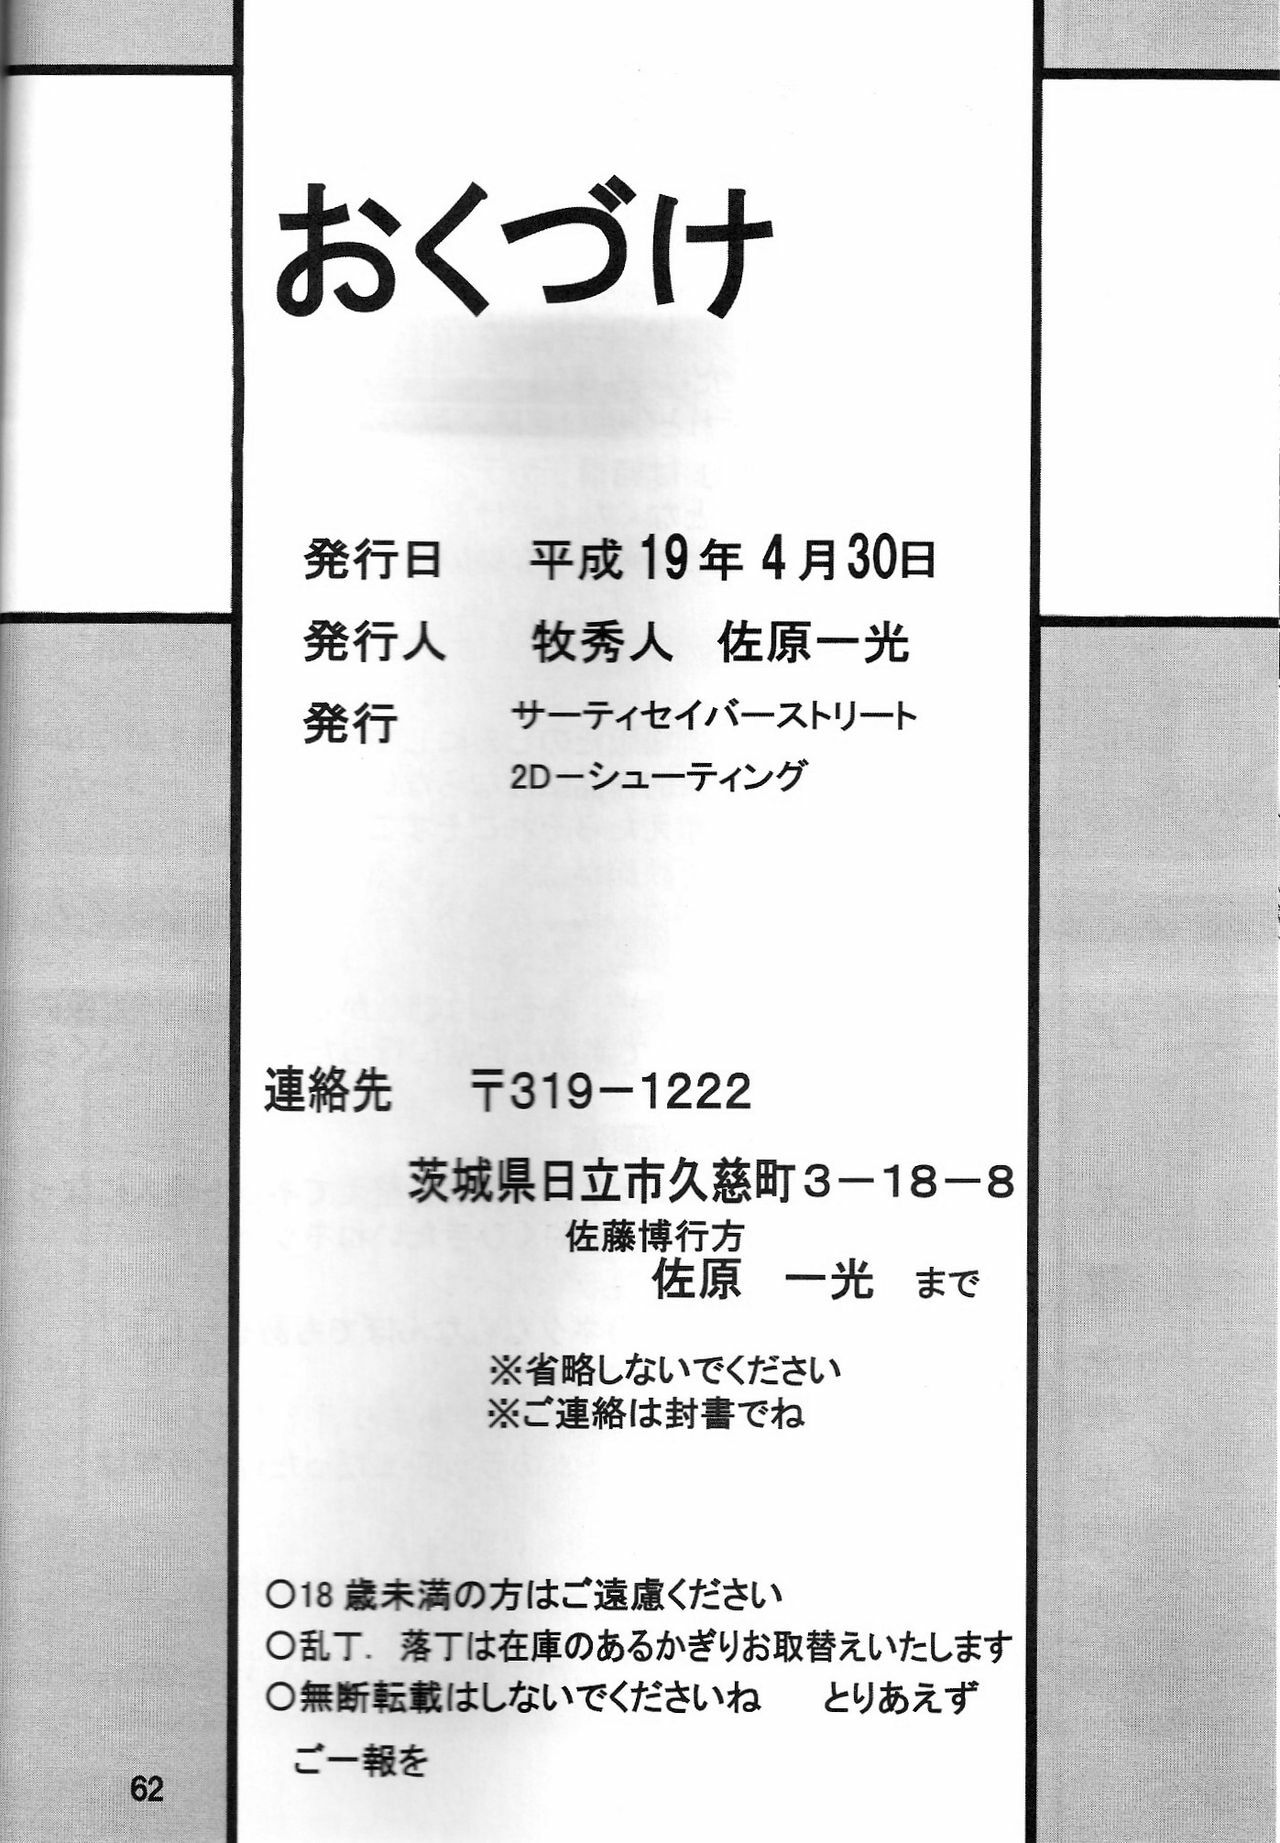 (COMIC1) [Thirty Saver Street 2D Shooting (Maki Hideto, Sawara Kazumitsu, Yonige-ya No Kyou)] Second Uchuu Keikaku 2 (Neon Genesis Evangelion) page 62 full